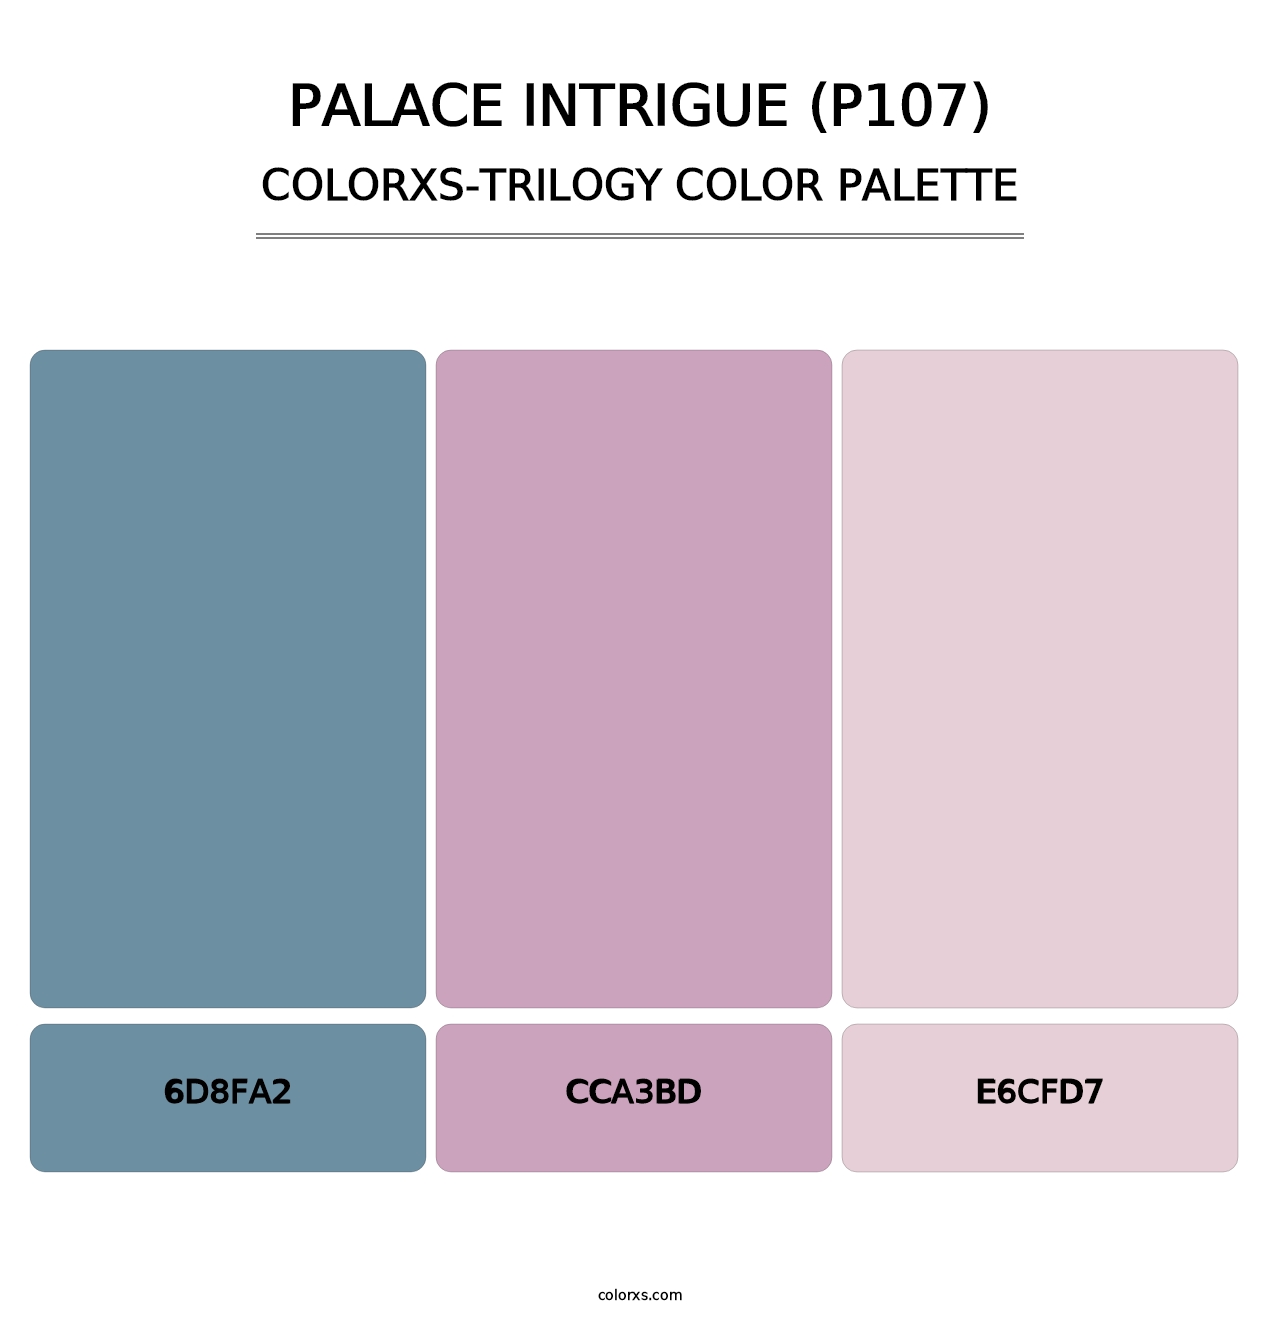 Palace Intrigue (P107) - Colorxs Trilogy Palette